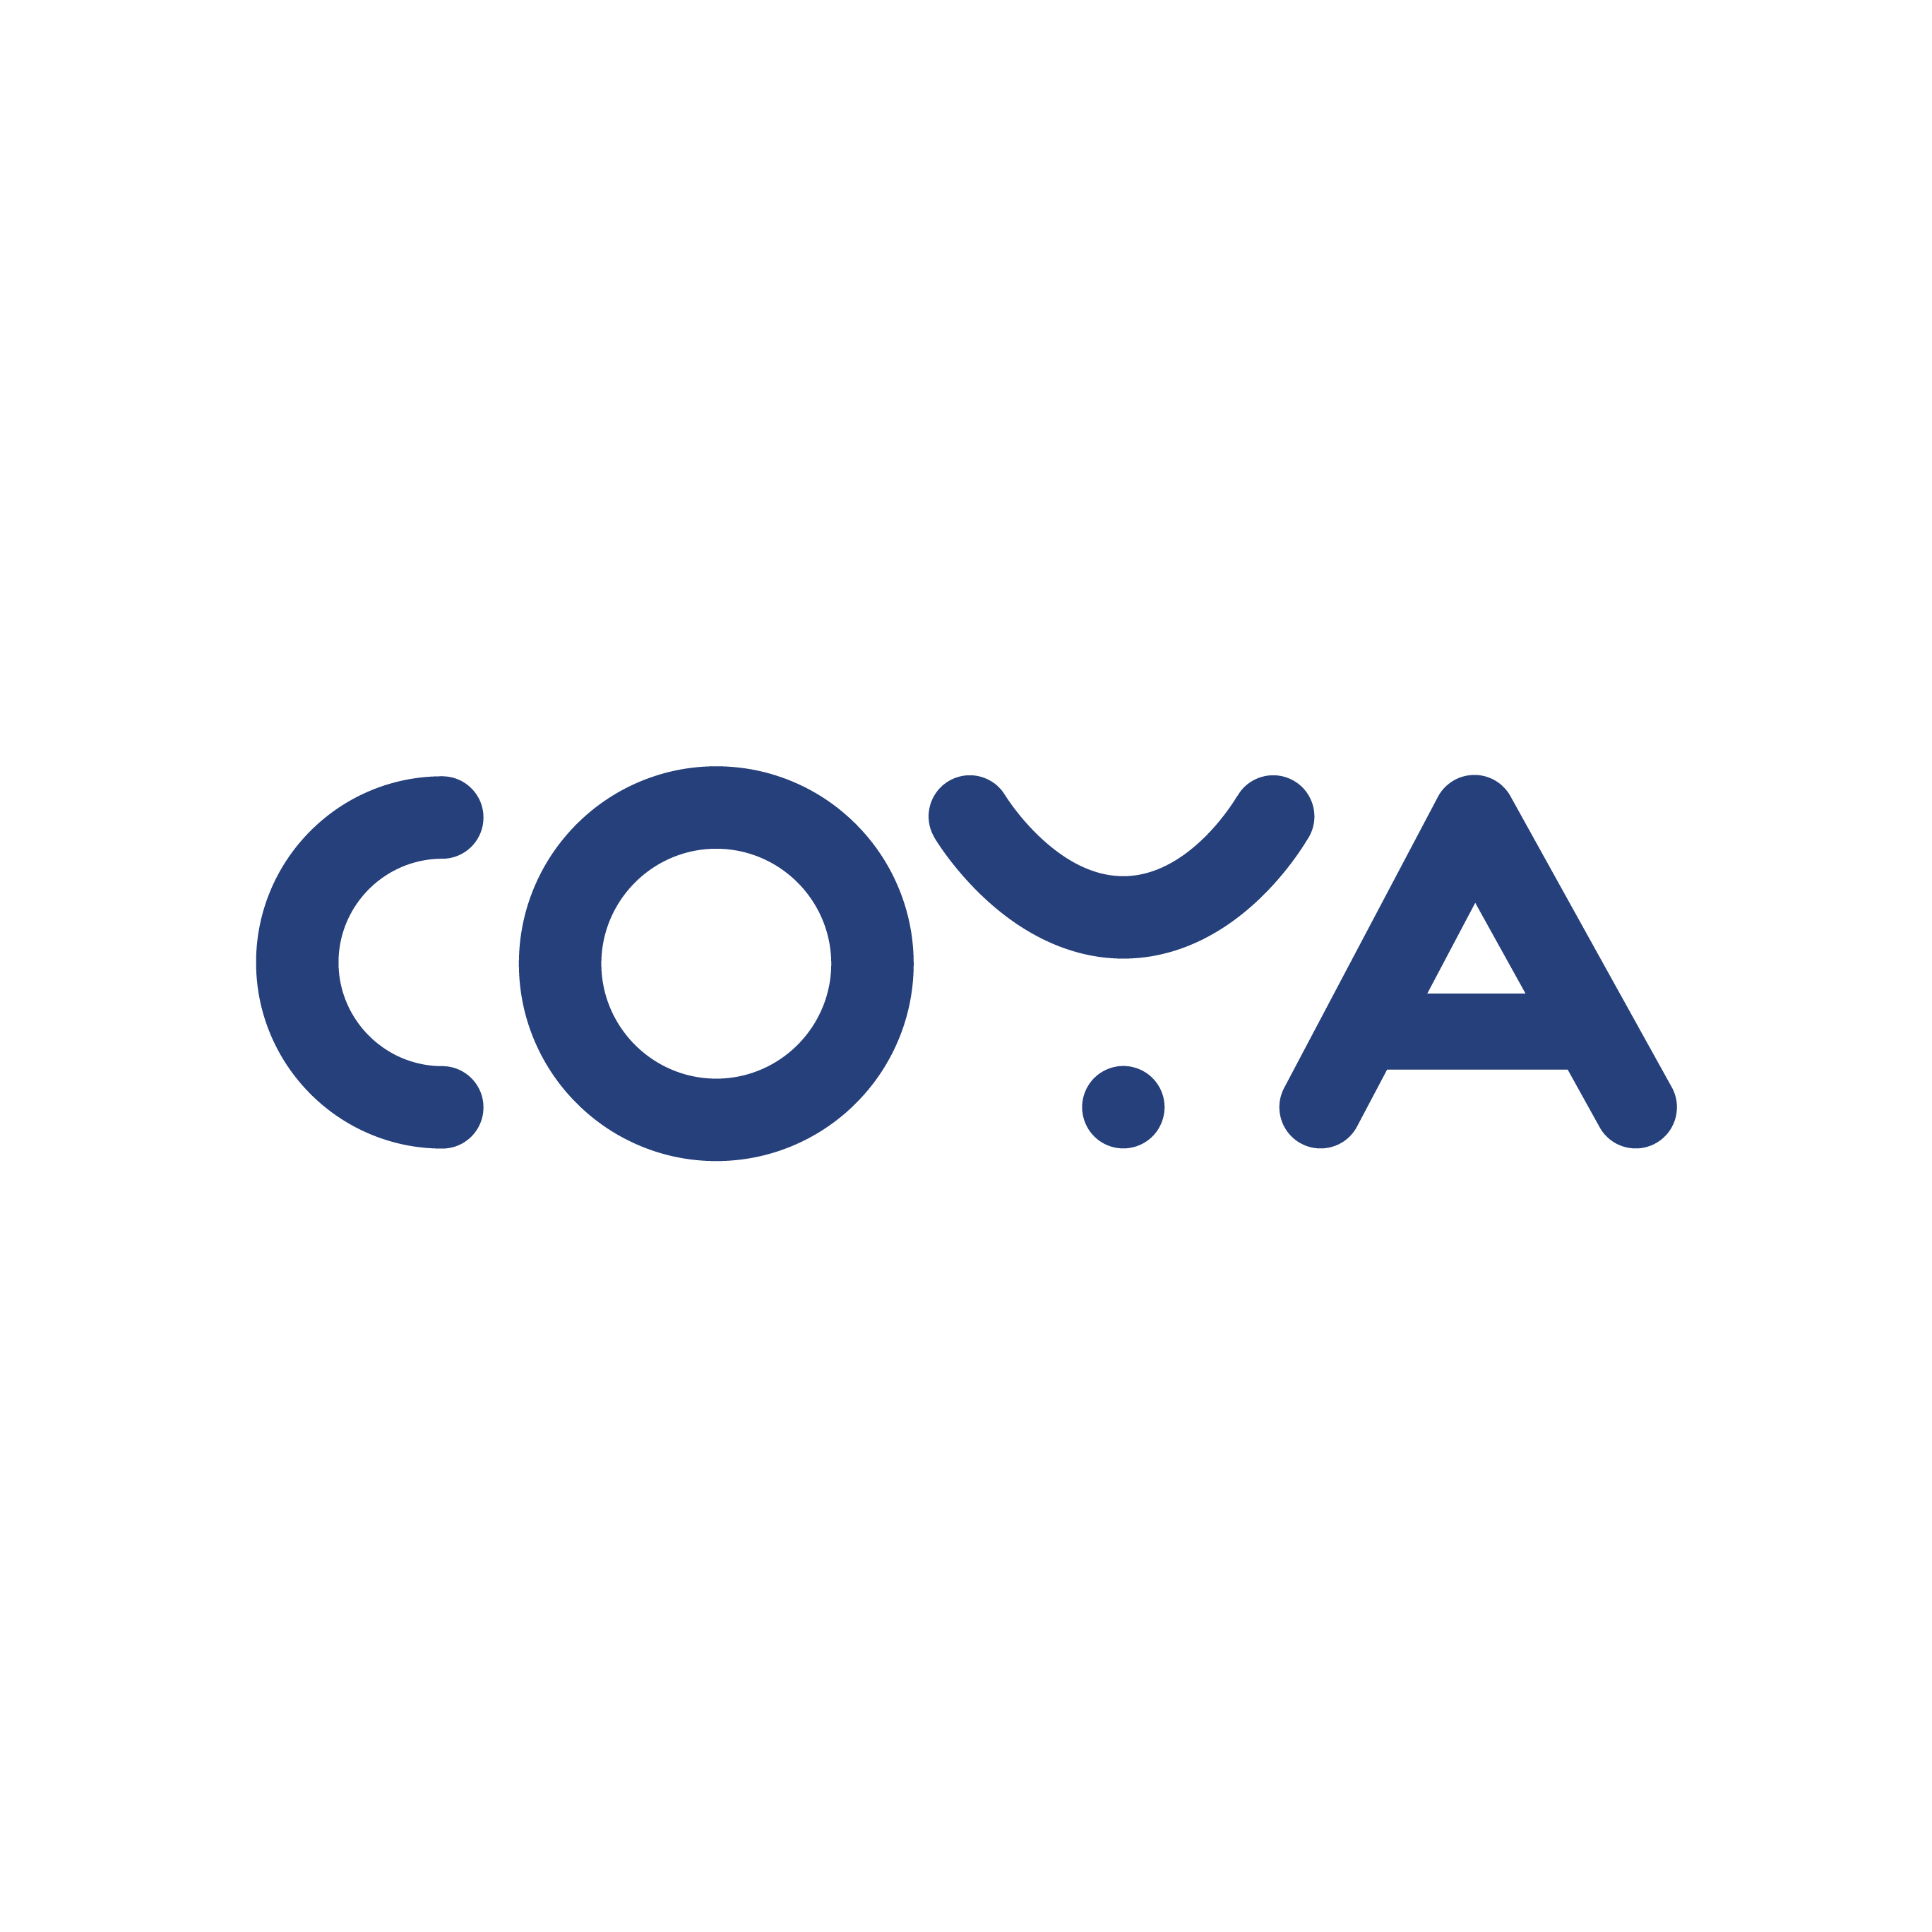 Coya’s logo